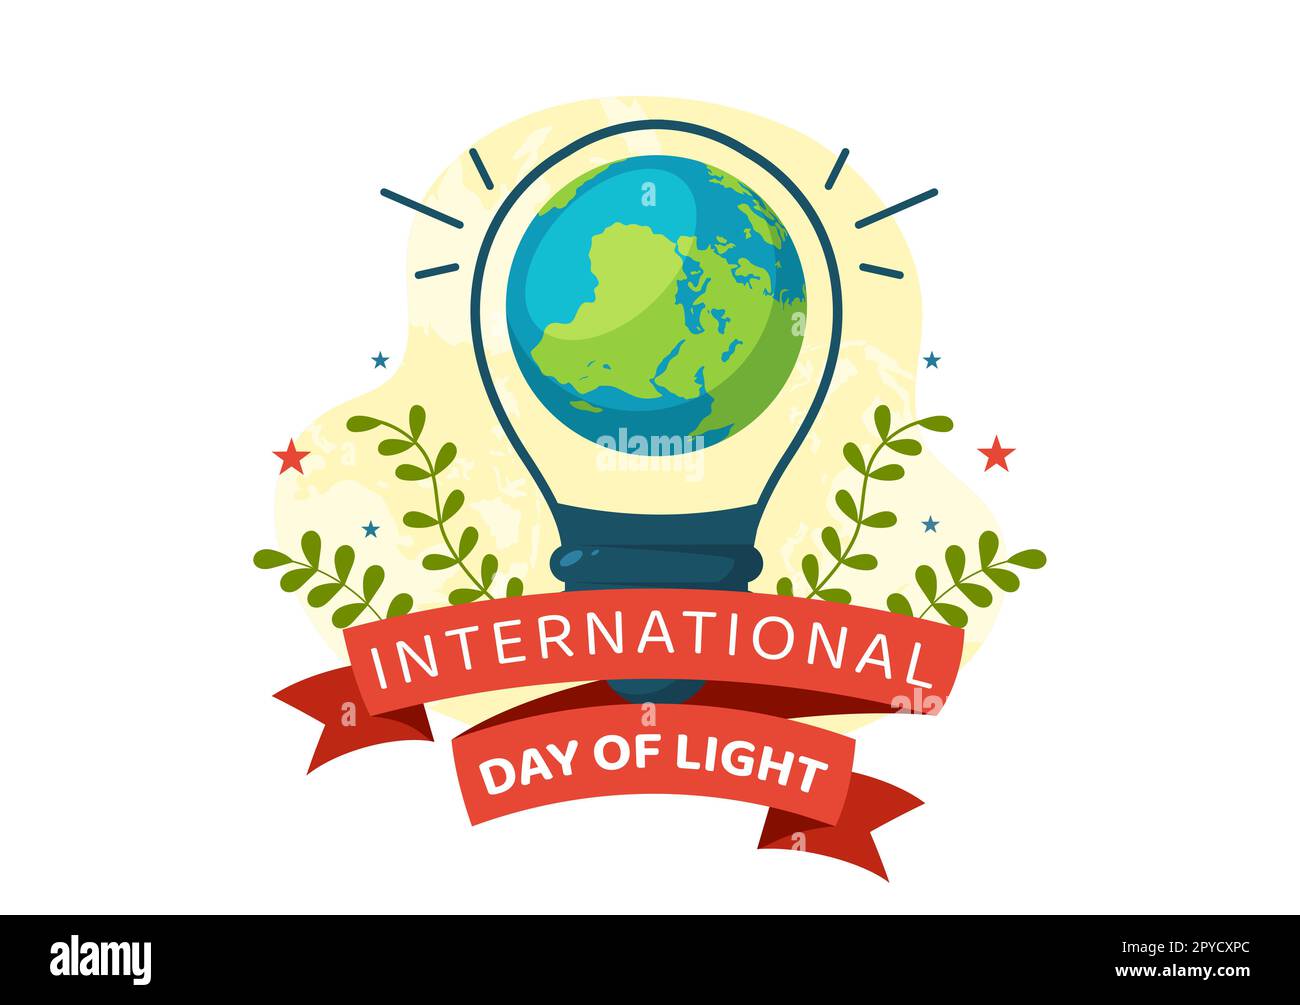 Internationaler Tag des Lichts am 16. Mai Illustration zur Bedeutung der Verwendung von Lampen in flachen Cartoons handgezeichnet für Banner- oder Landing-Page-Vorlagen Stockfoto